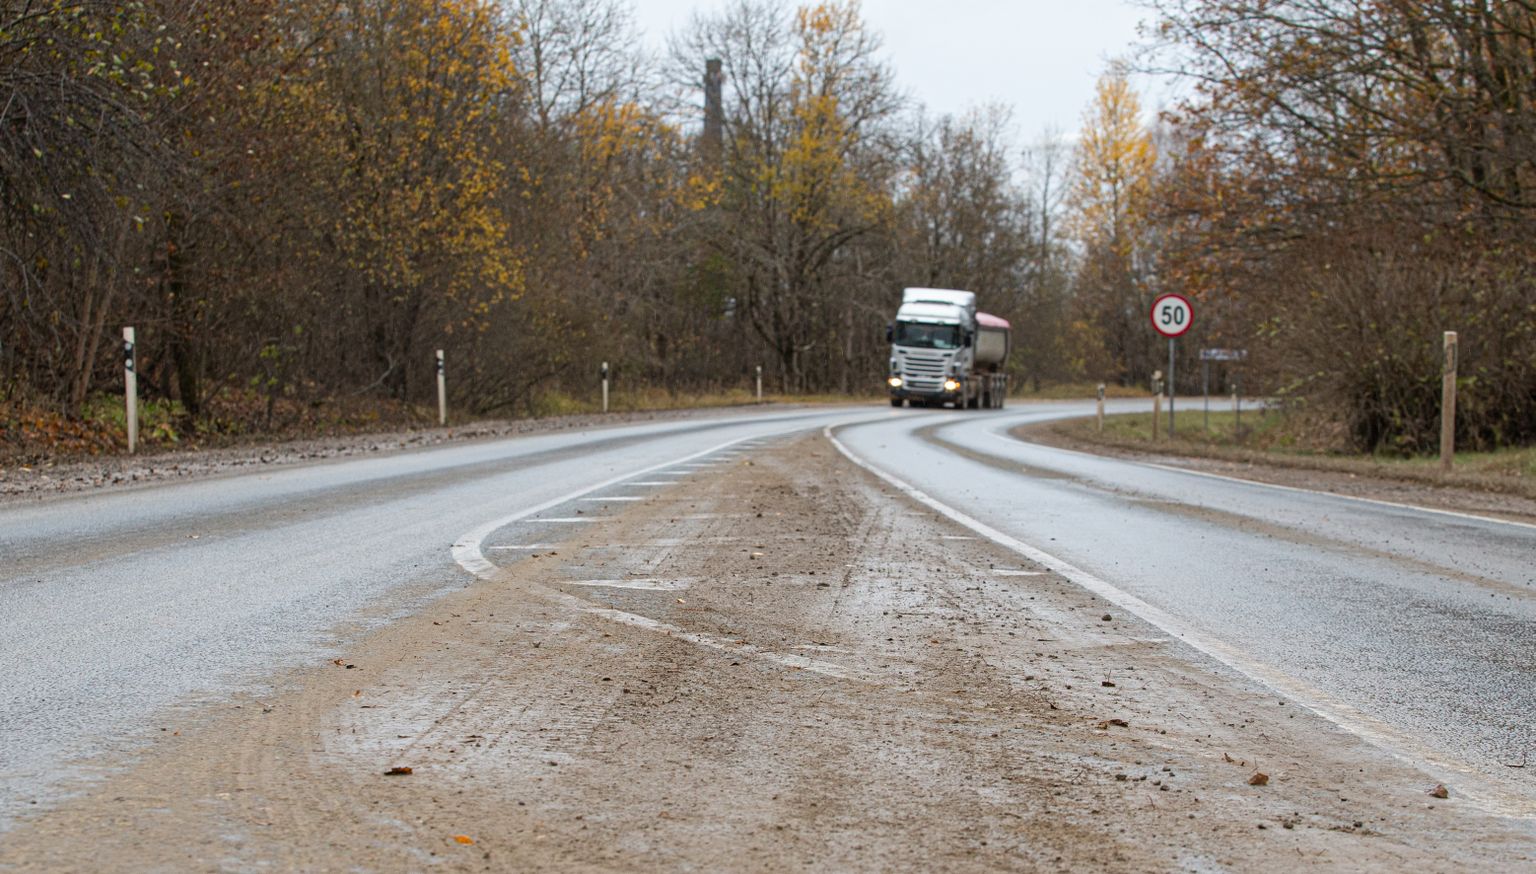 Следующие с разреза в сторону Нарвы грузовики оставляют на шоссе грязь, которая в зависимости от погоды переносится в город Кивиыли в виде пыли или грязи.